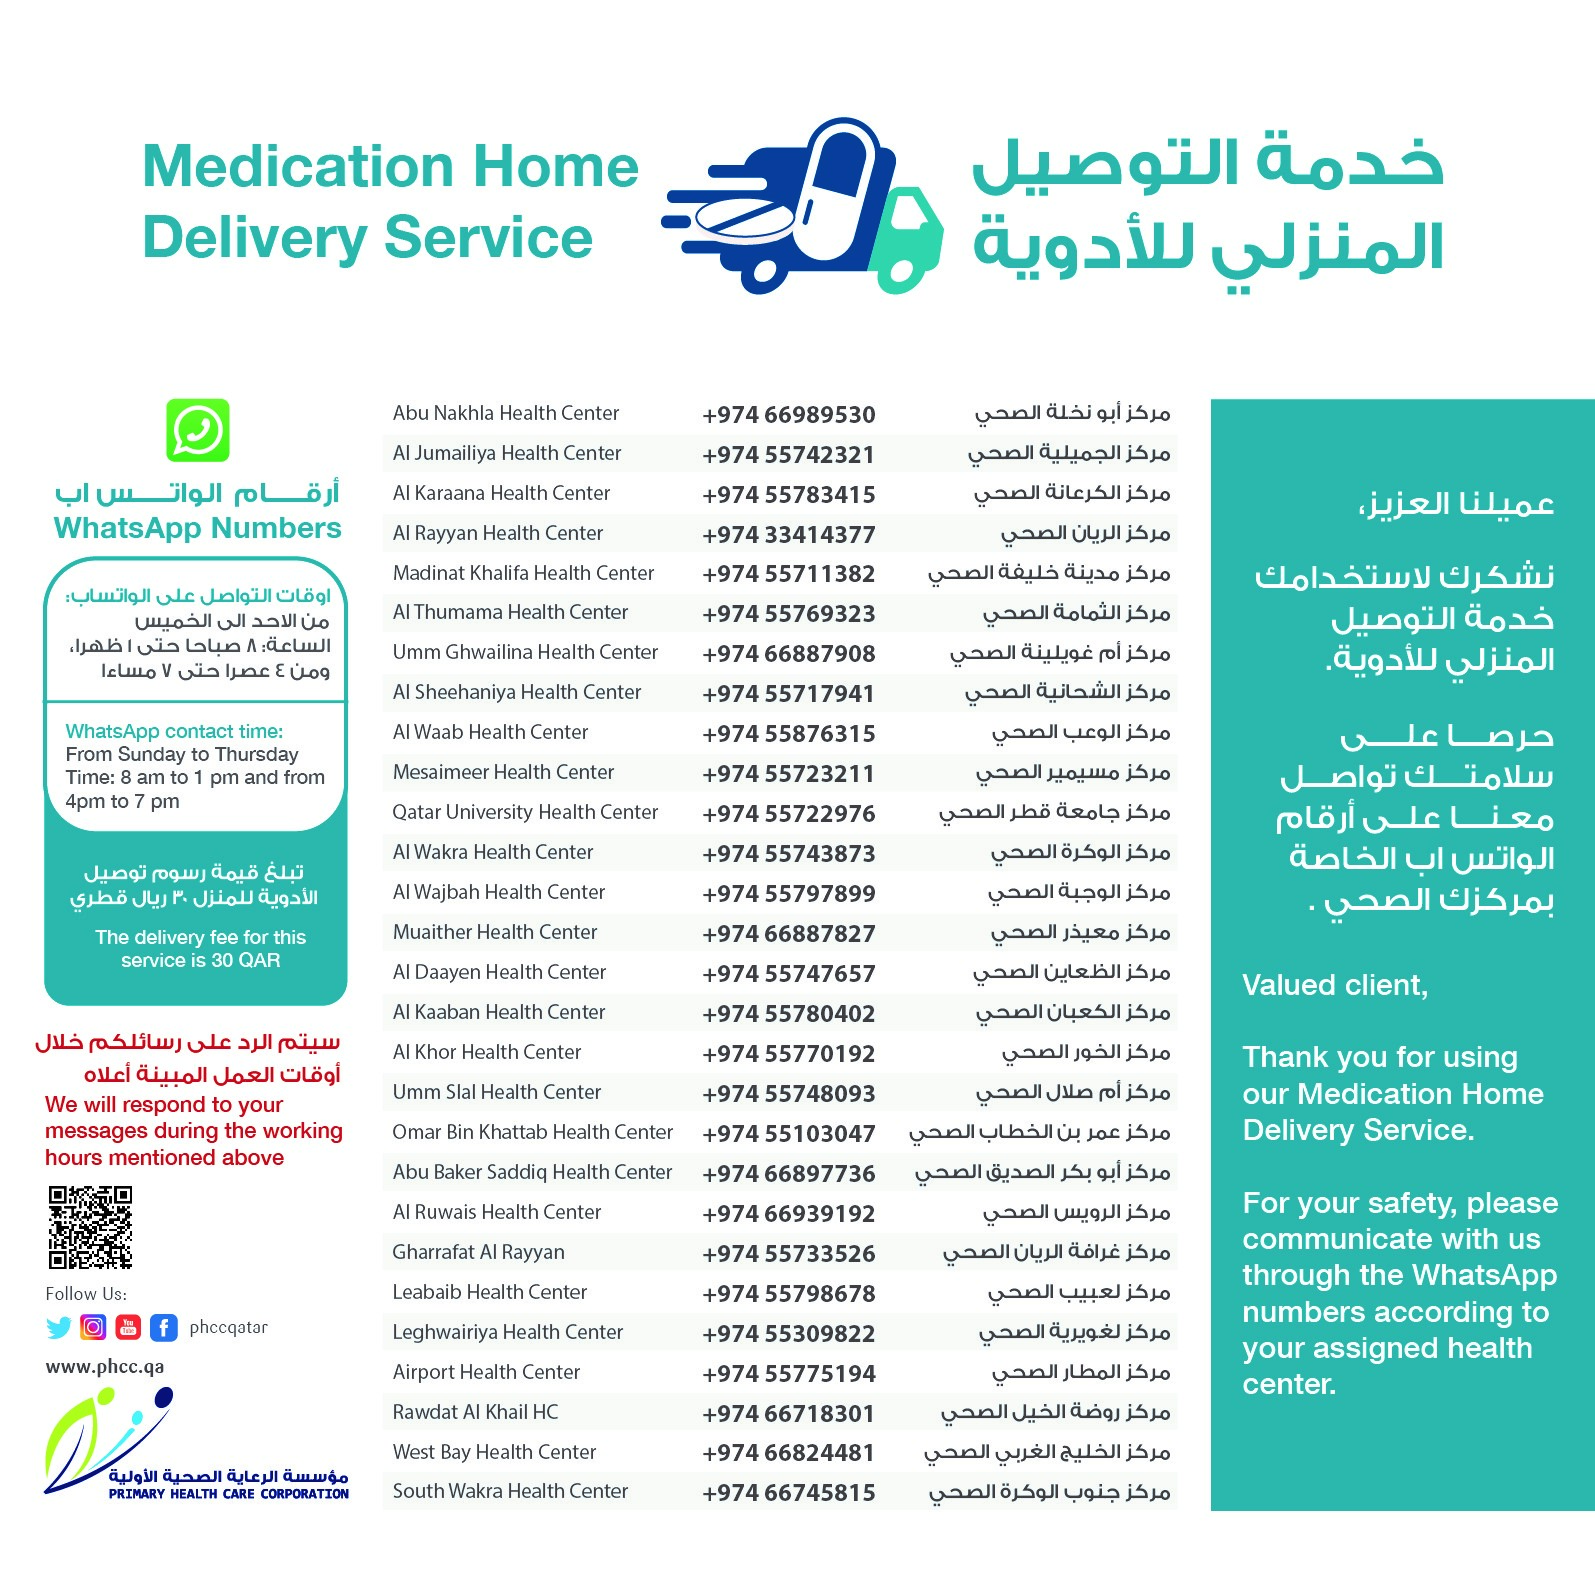 Home Medication Deliveryjpg  2022